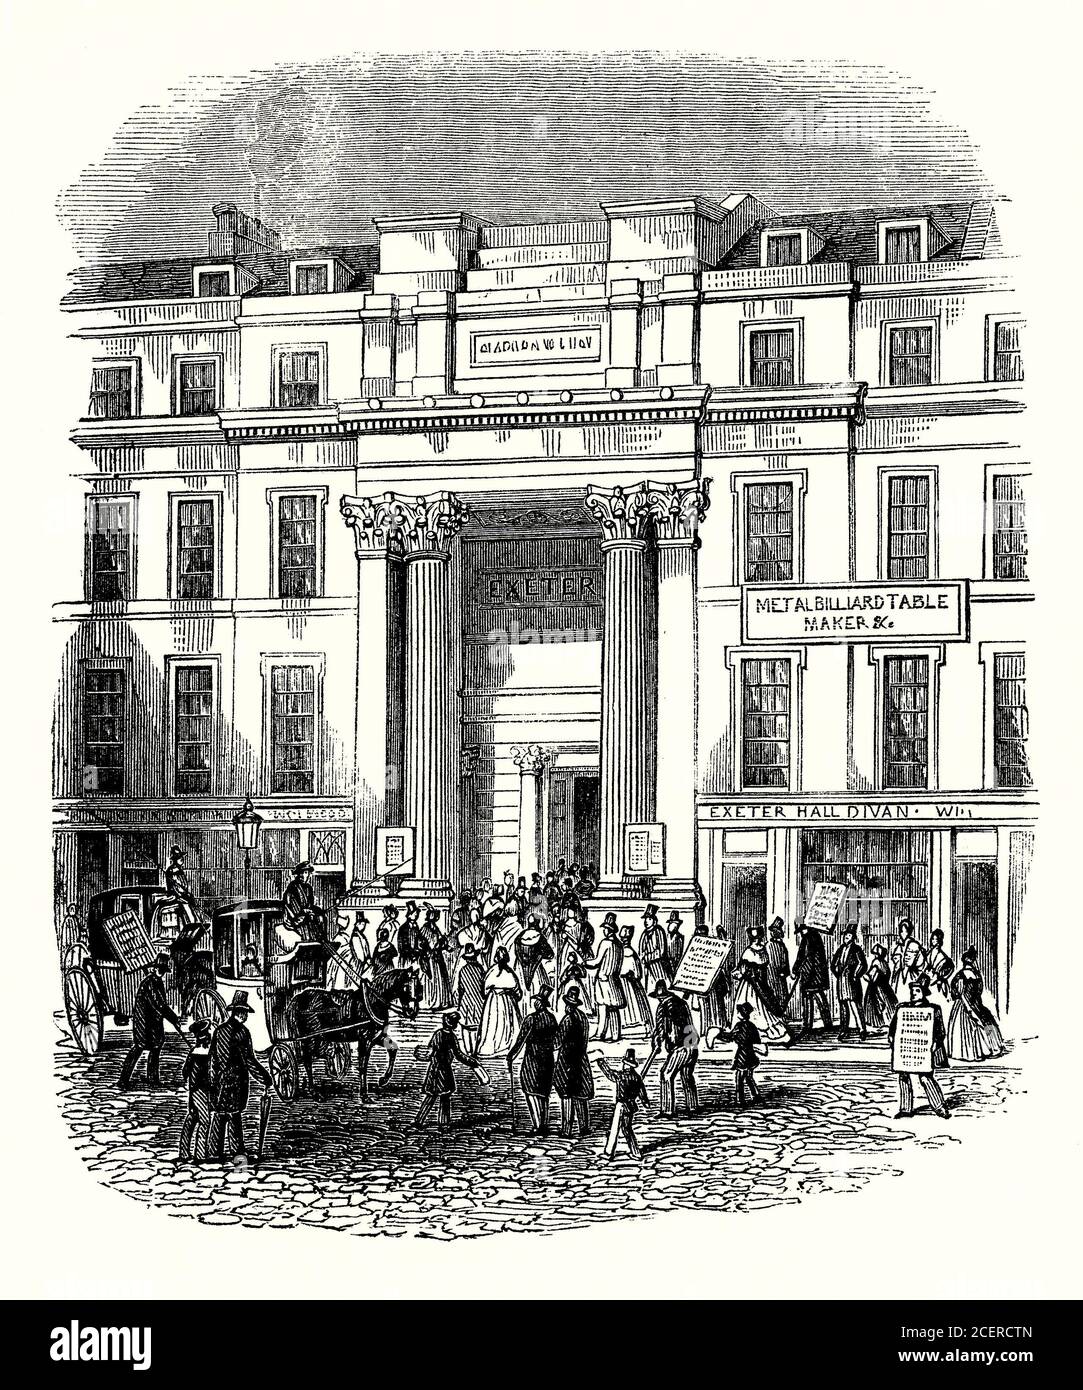 Una vecchia incisione di Exeter Hall, The Strand, Londra, Inghilterra, Regno Unito c. 1840. Fu eretta tra il 1829 e il 1831 sul sito di Exeter Exchange. L'auditorium della sala principale può ospitare più di 4,000 persone. Exeter Hall ha ospitato incontri religiosi e filantropici. Qui si sono svolti gli incontri della Società anti-schiavitù, e le parole ‘Exeter Hall’ sono diventate sinonimi della lobby anti-schiavitù. Divenne sede di YMCA (fondata nel 1844). Exeter Hall è stata venduta da YMCA al J. Lyons & Co nel 1907. L'edificio è stato demolito e lo Strand Palace Hotel è stato costruito al suo posto, inaugurato nel 1909. Foto Stock